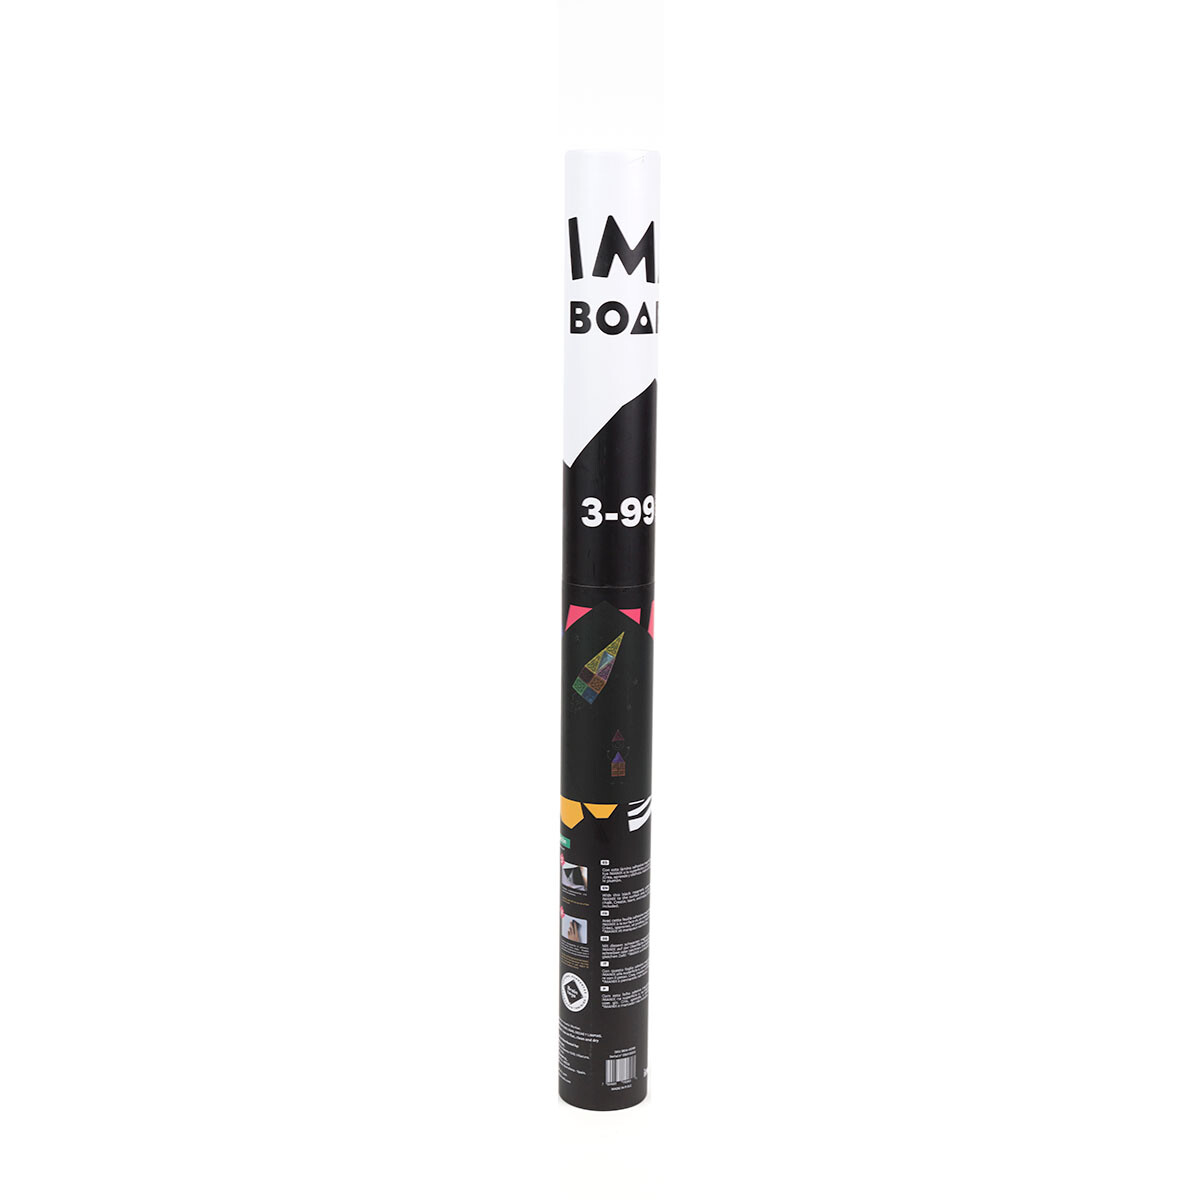 Imaboard Imanix Lámina Adhesiva Magnética - Negro 